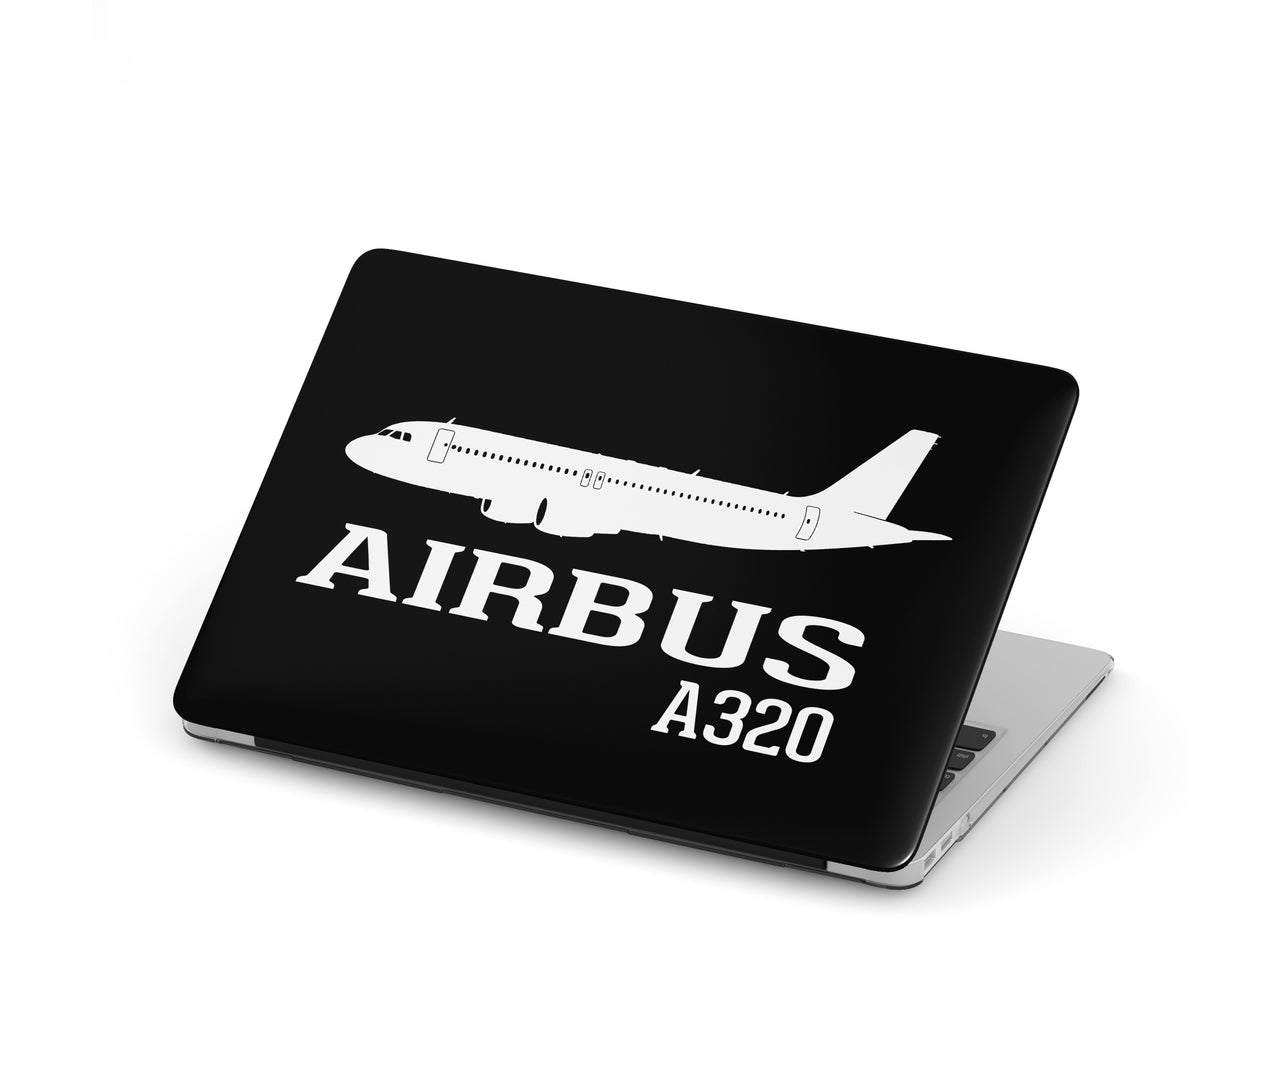 Airbus A320 Printed Designed Macbook Cases